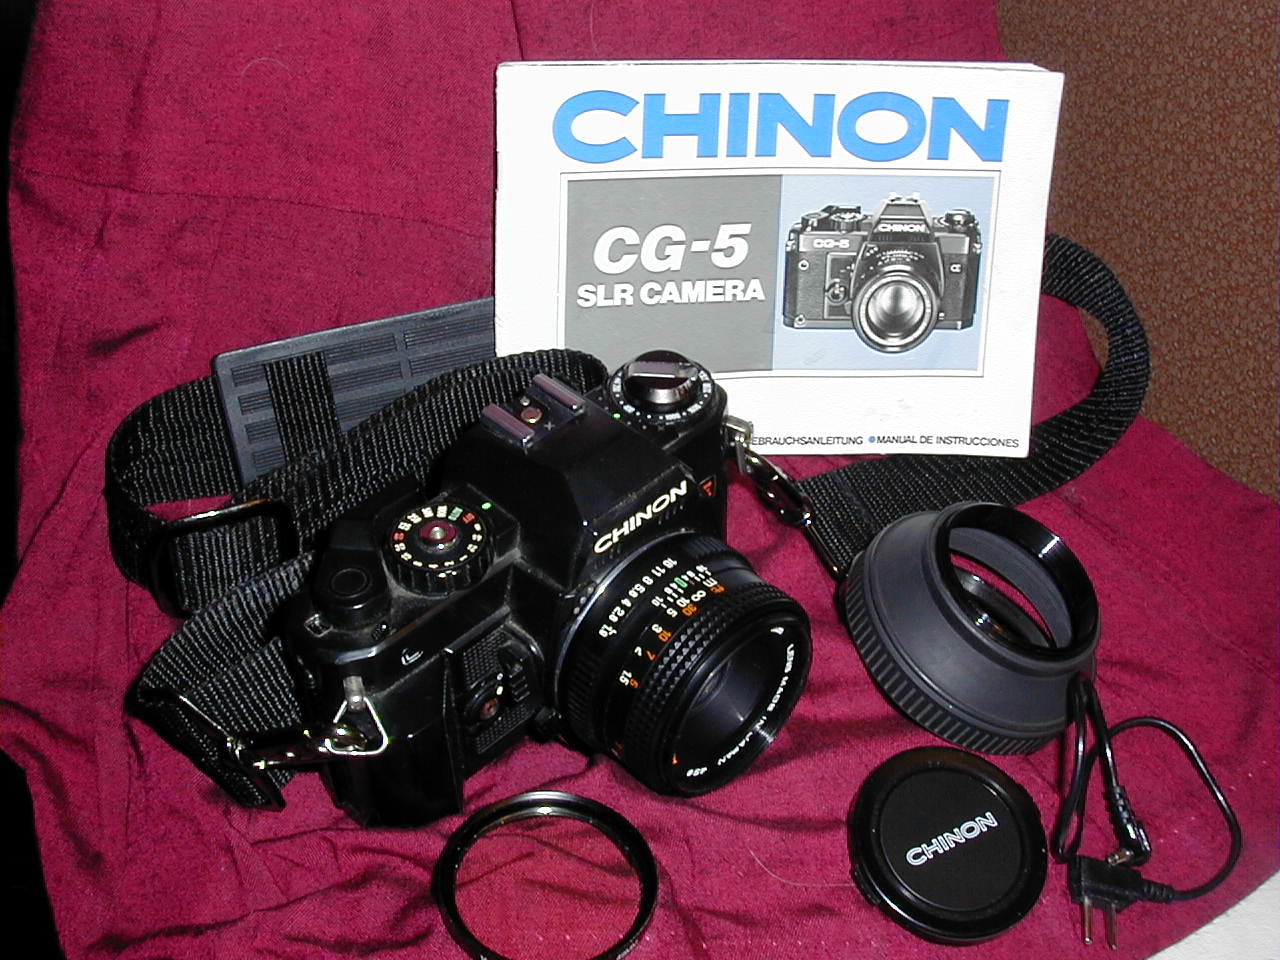 Chinon CG-5 SLR camera